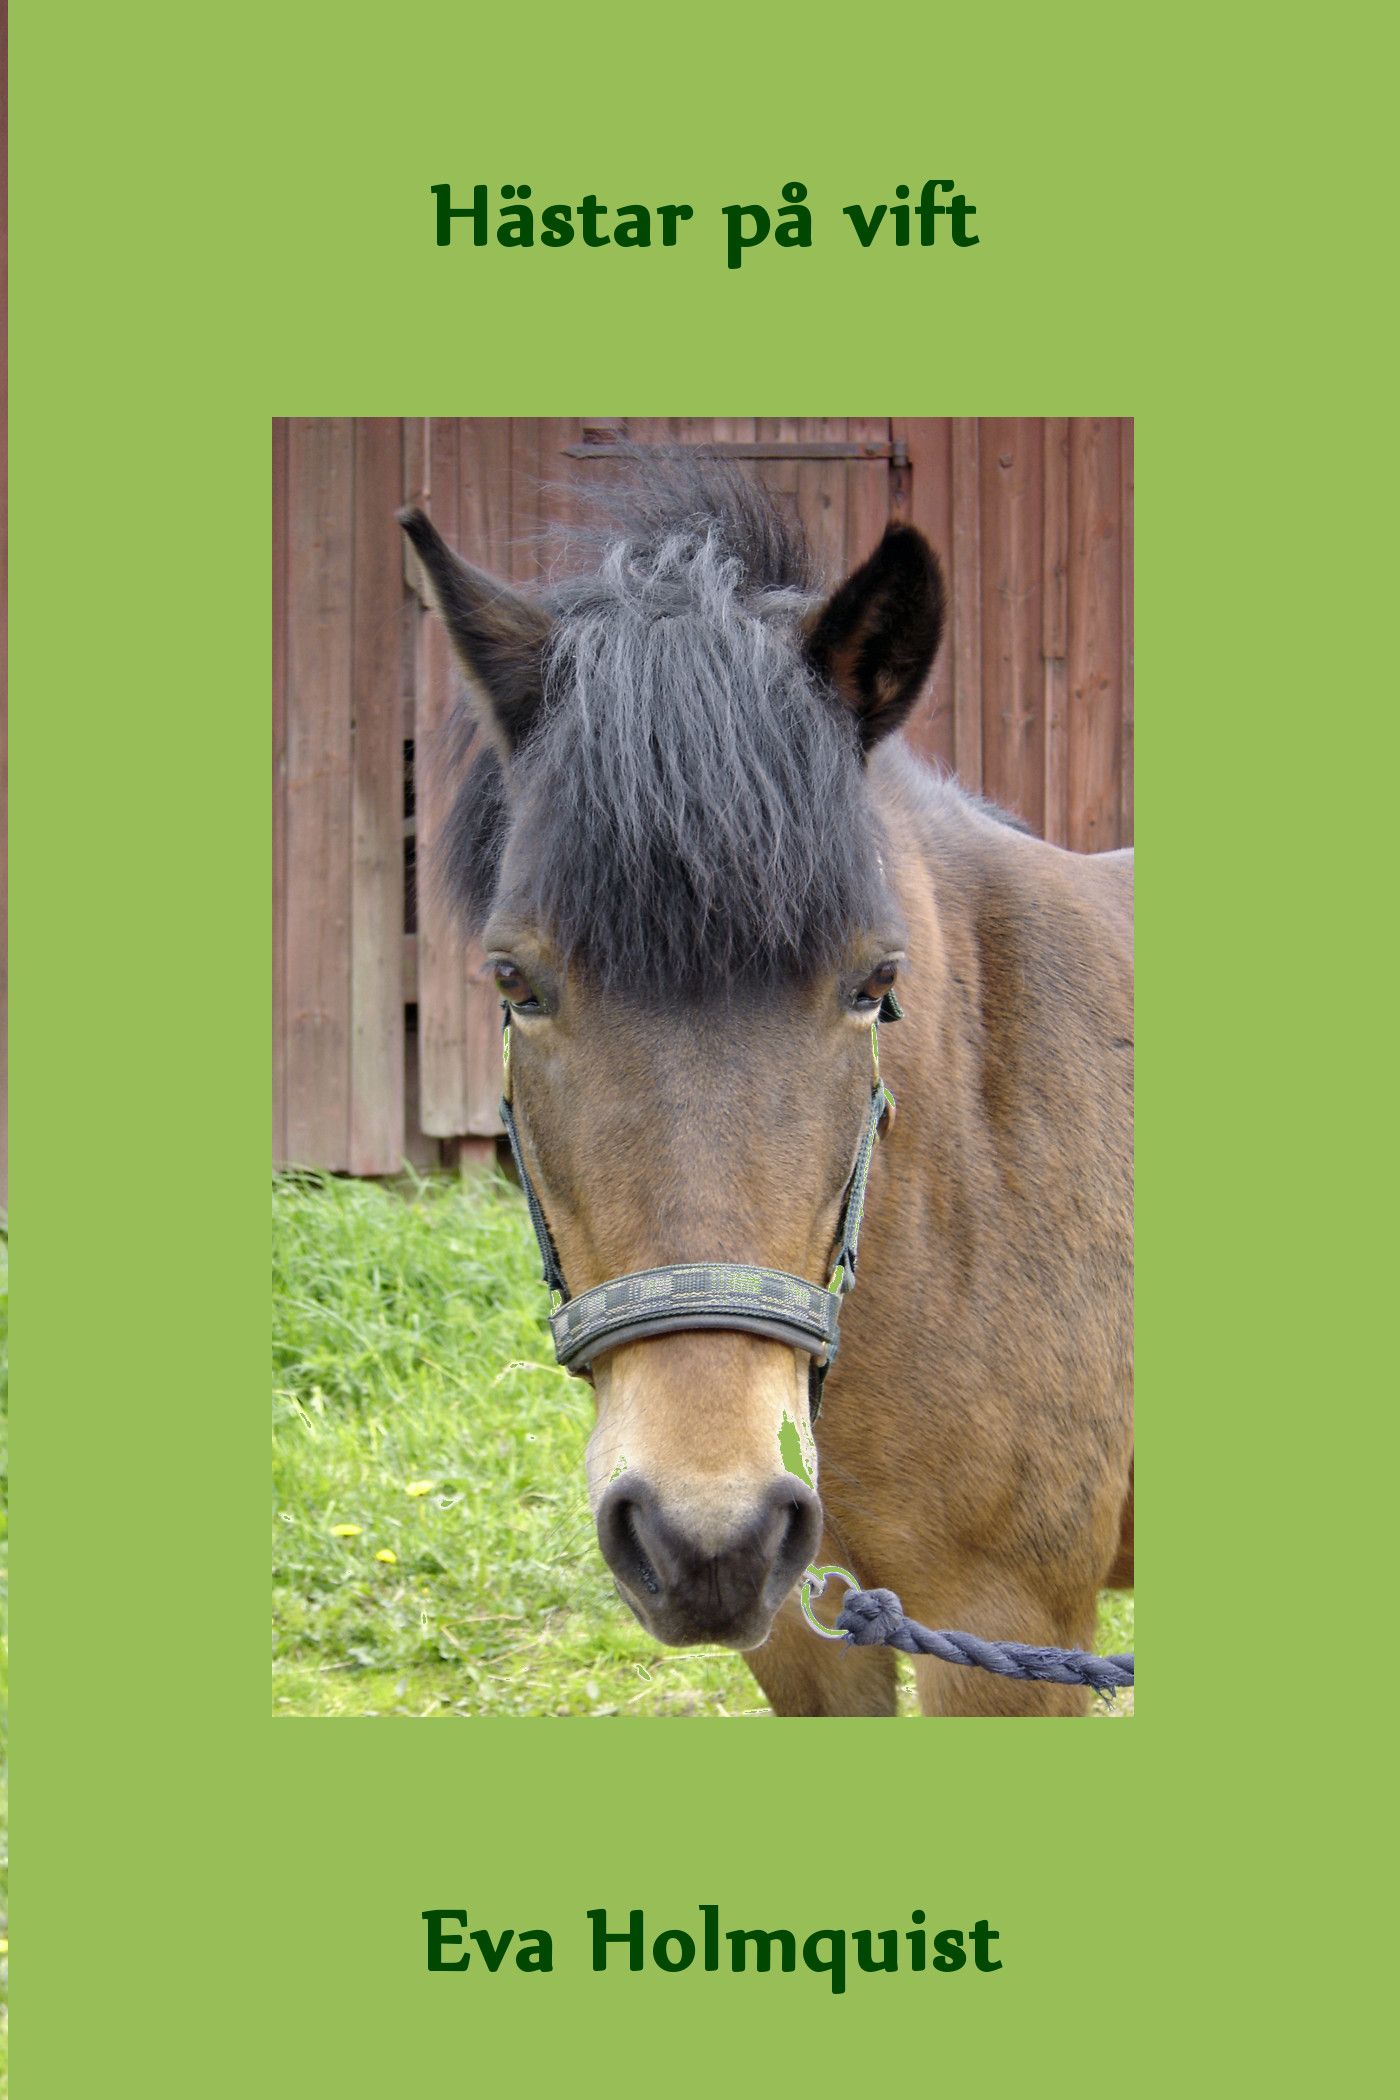 Hästar på vift, e-bog af Eva Holmquist